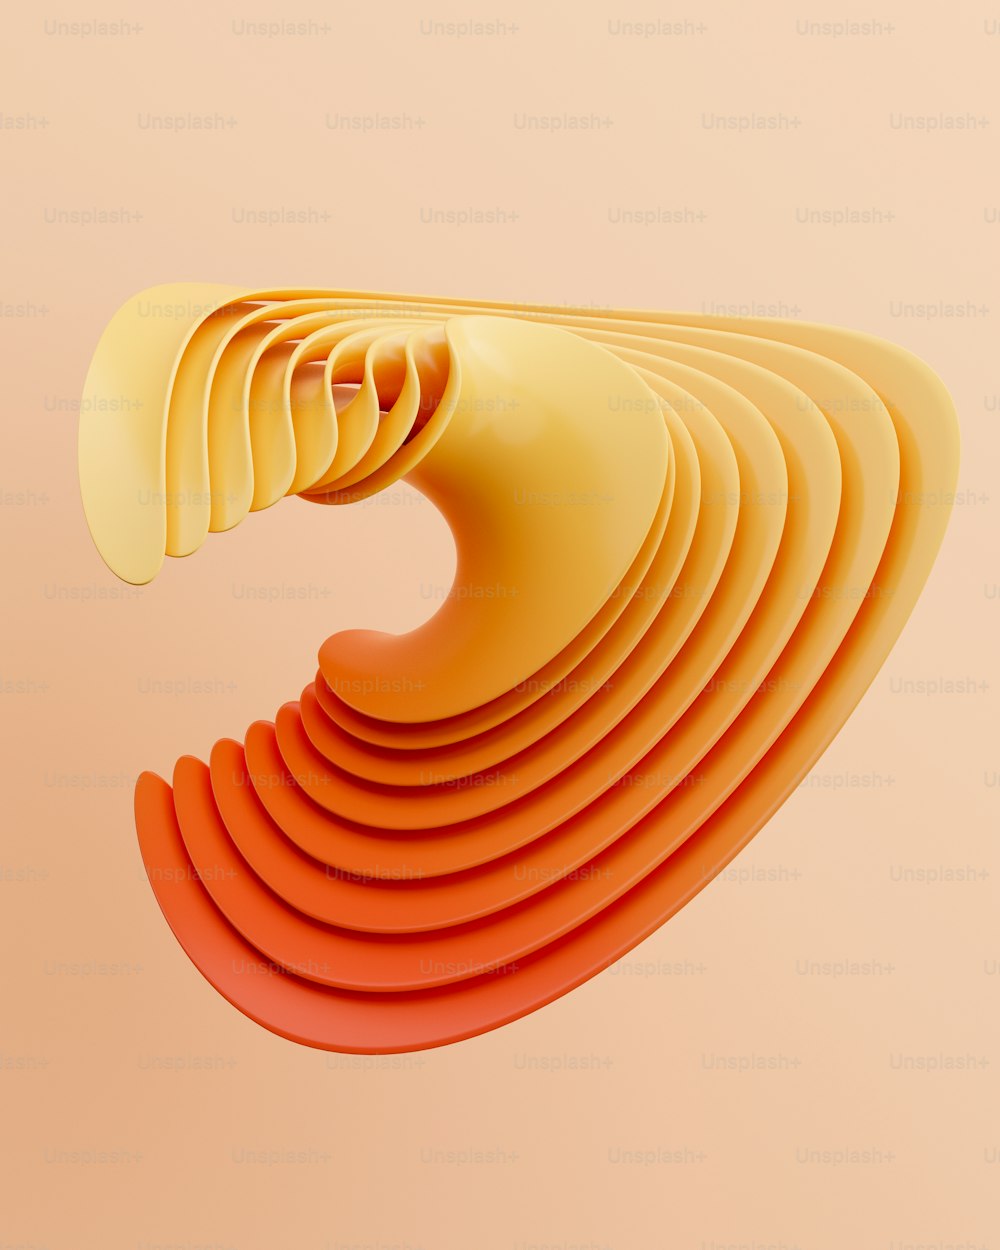 Una imagen abstracta de un objeto naranja curvo